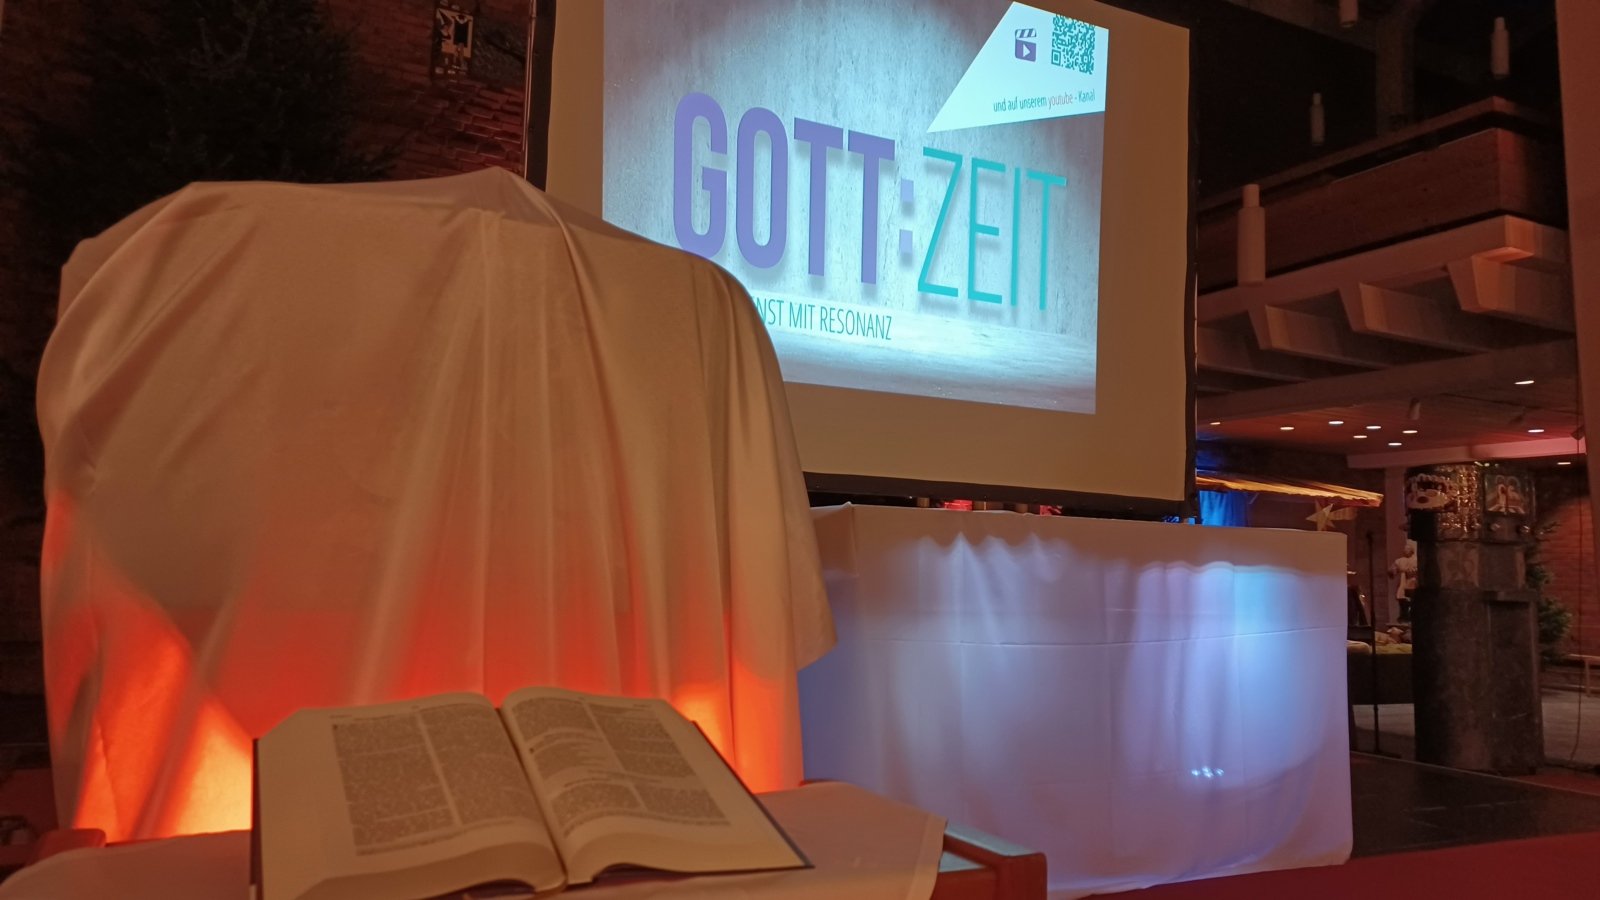 GottZeit - Bibel (c) Alexander Daun